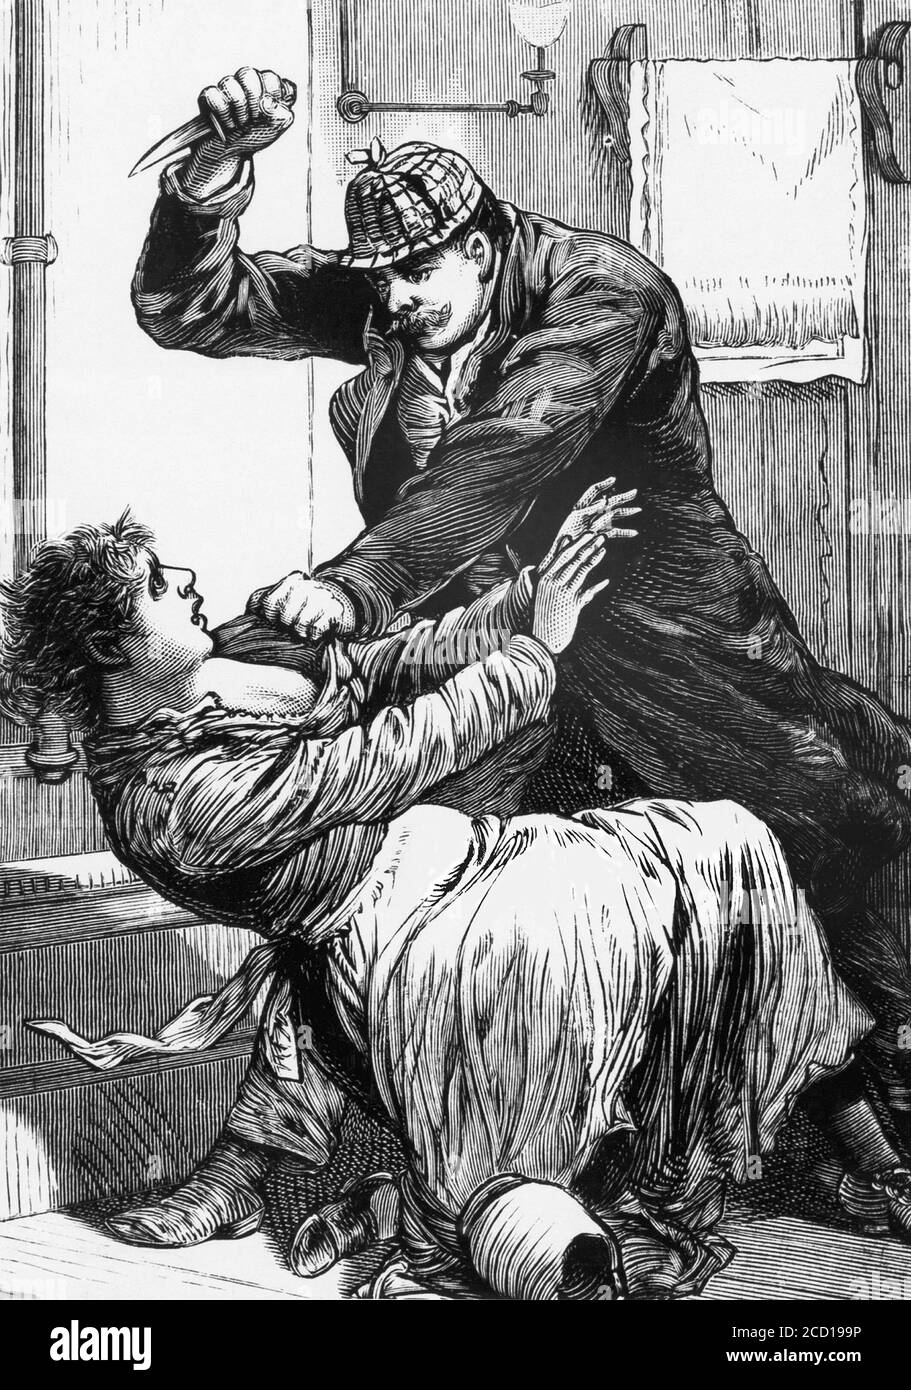 Jack el Ripper. Ilustración de la Gaceta de la Policía Nacional en febrero de 1889 titulada "otra víctima de Jack el Destripador - presunto ataque contra Pretty Miss Eisenhart en el Hospital Cooper, Camden, N. J., golpeándola de una manera terrible" Foto de stock